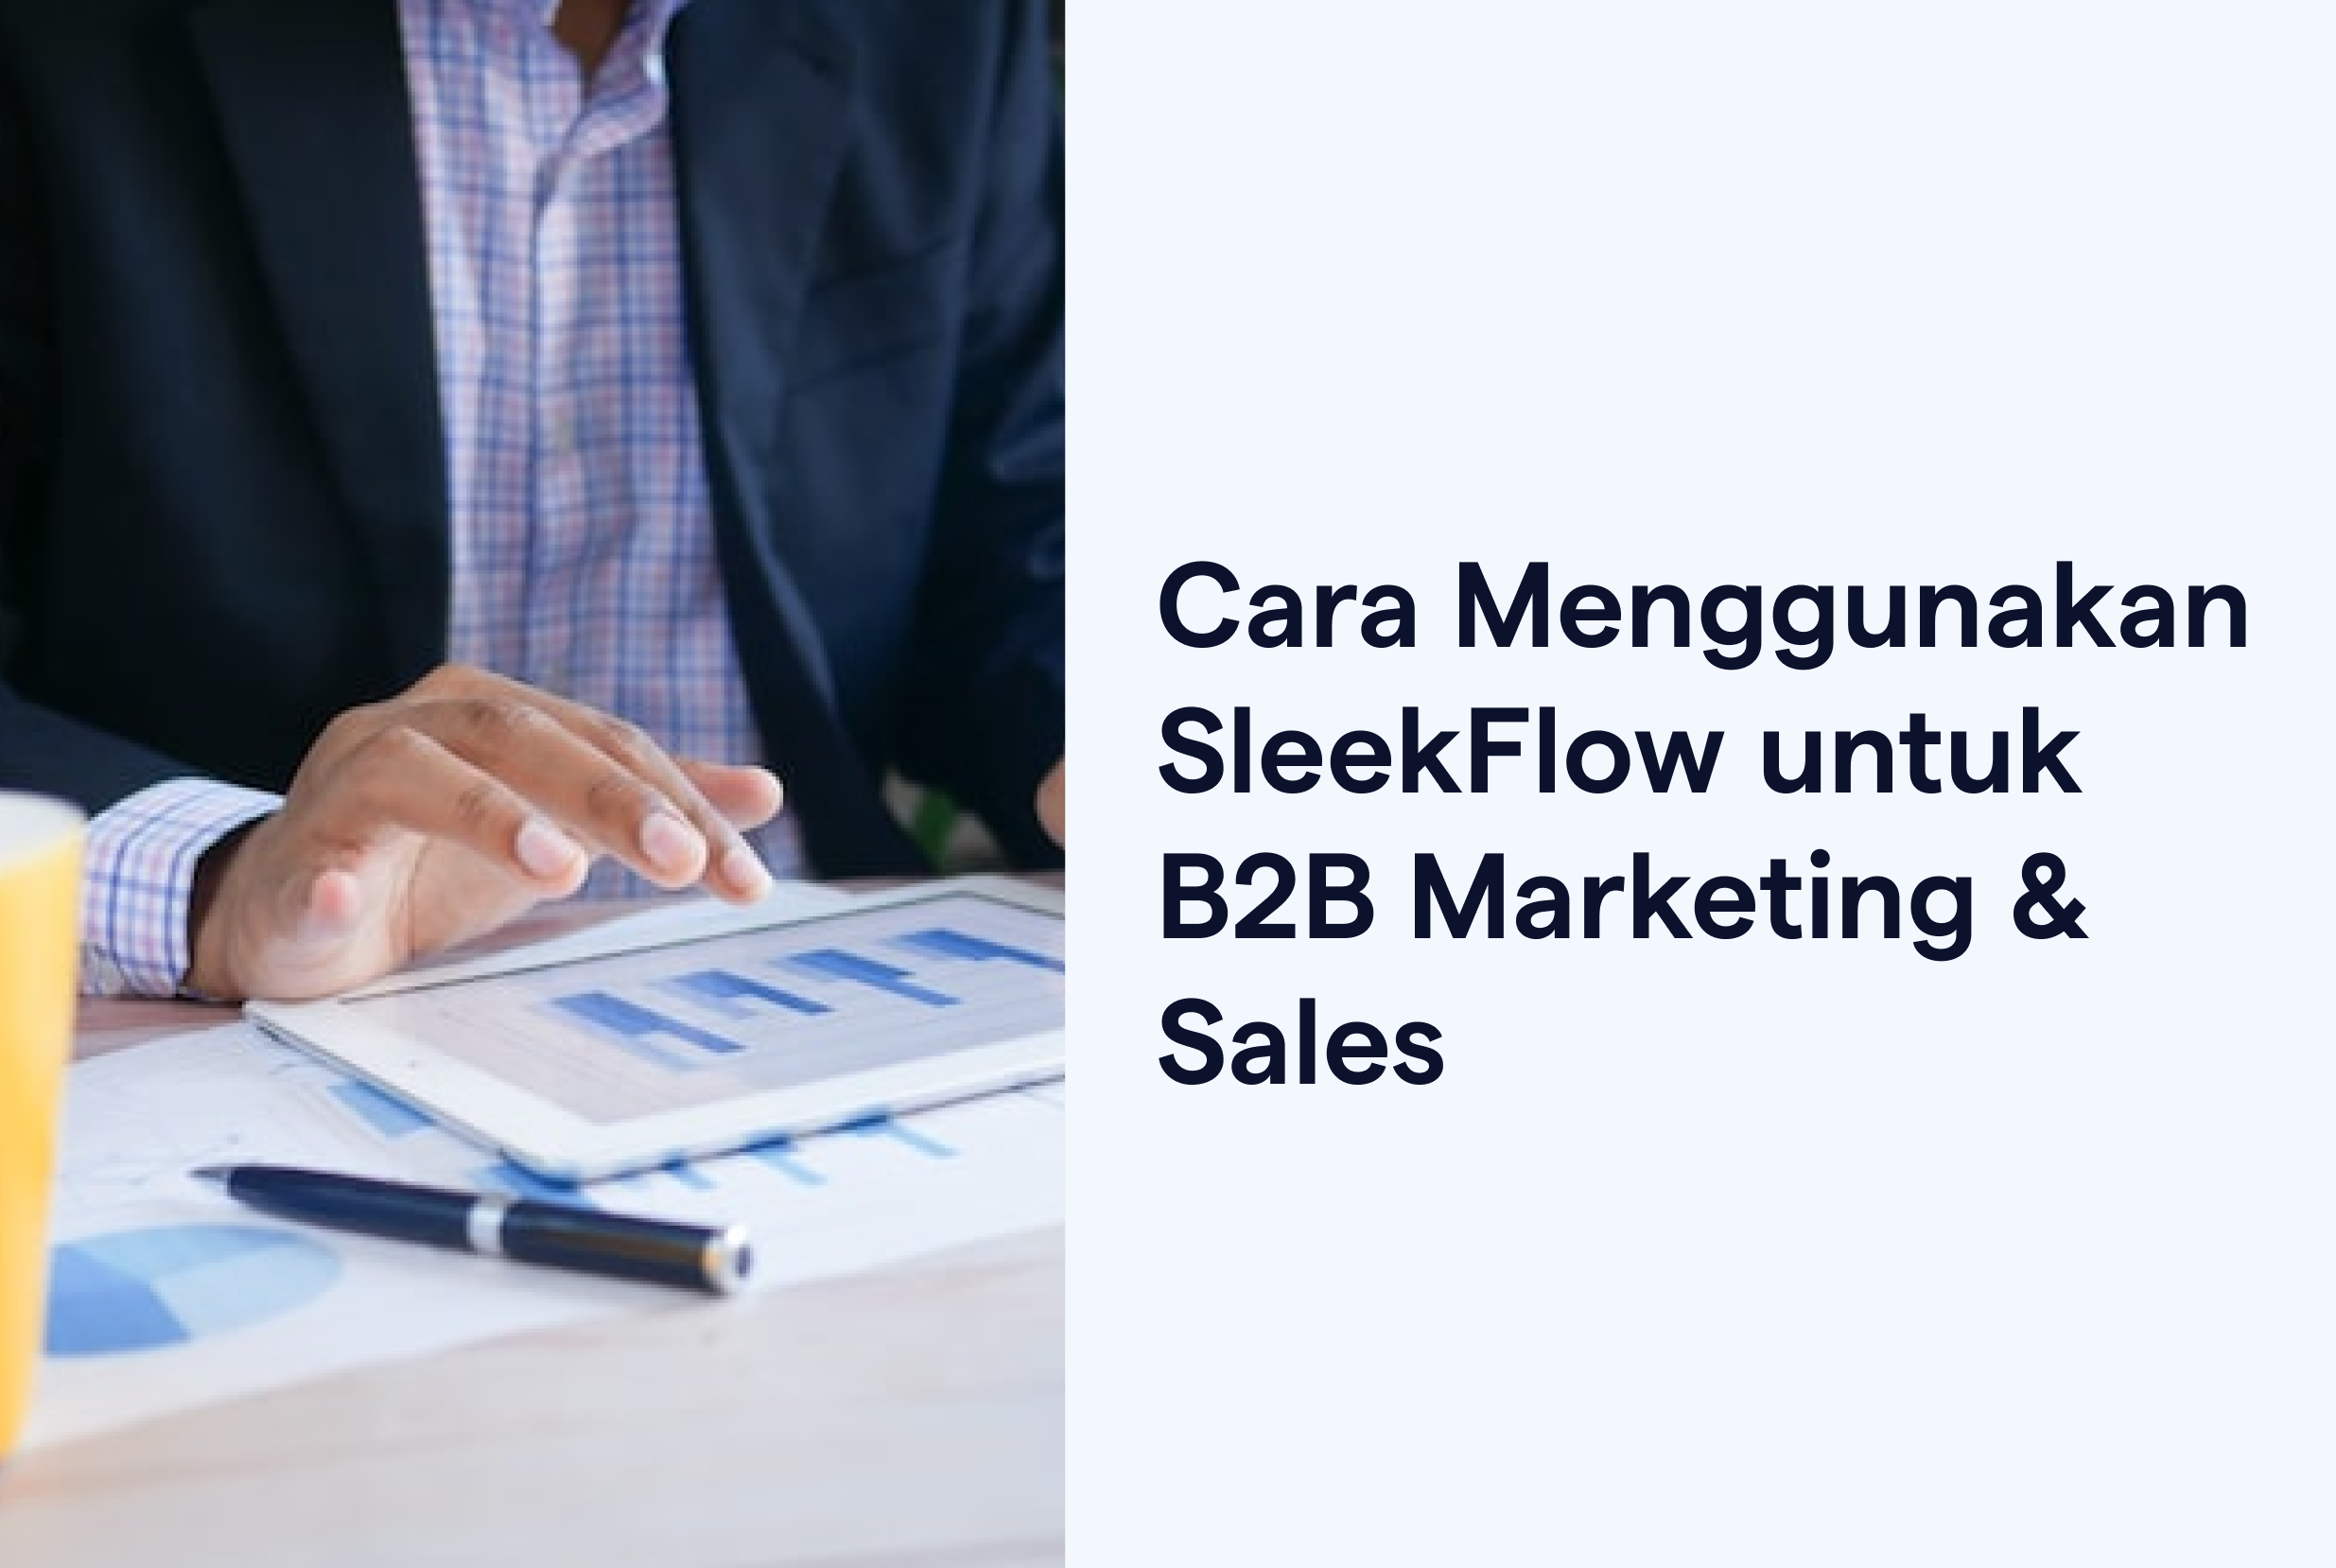 Cara Menggunakan SleekFlow untuk B2B Marketing & Sales